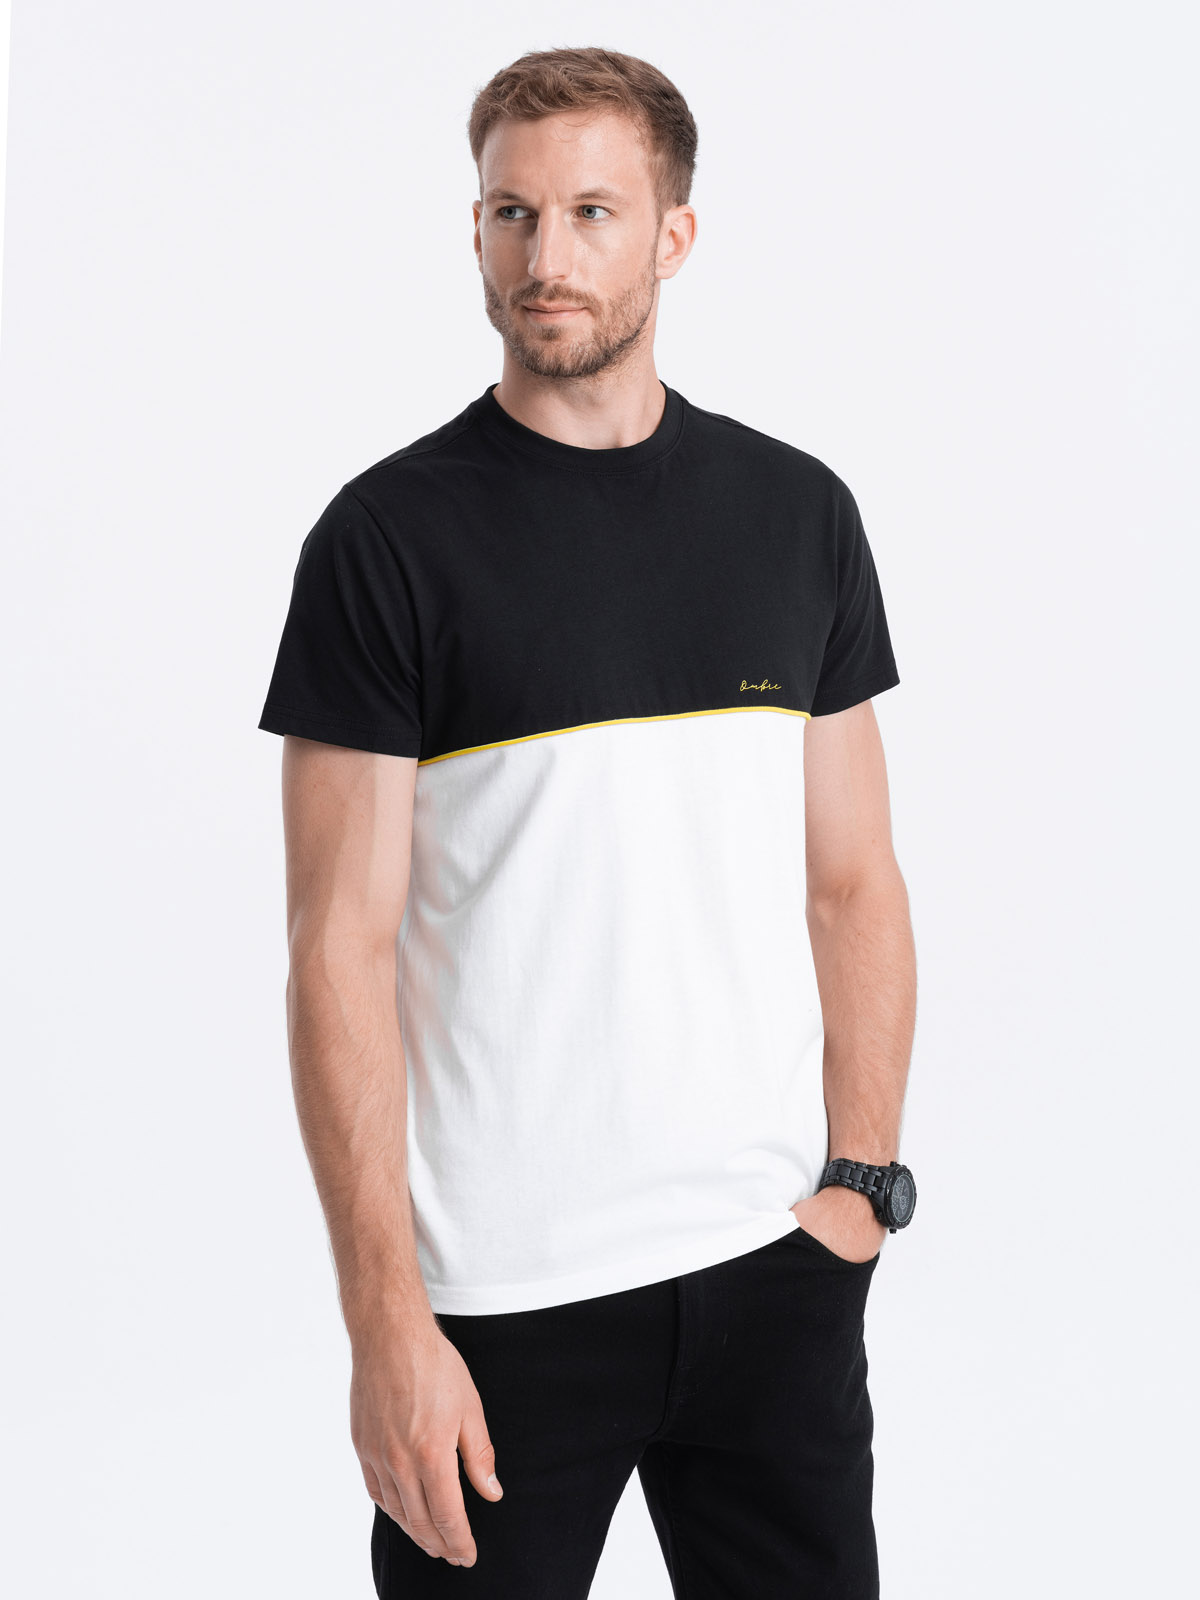 Ombre Men's two-tone cotton t-shirt